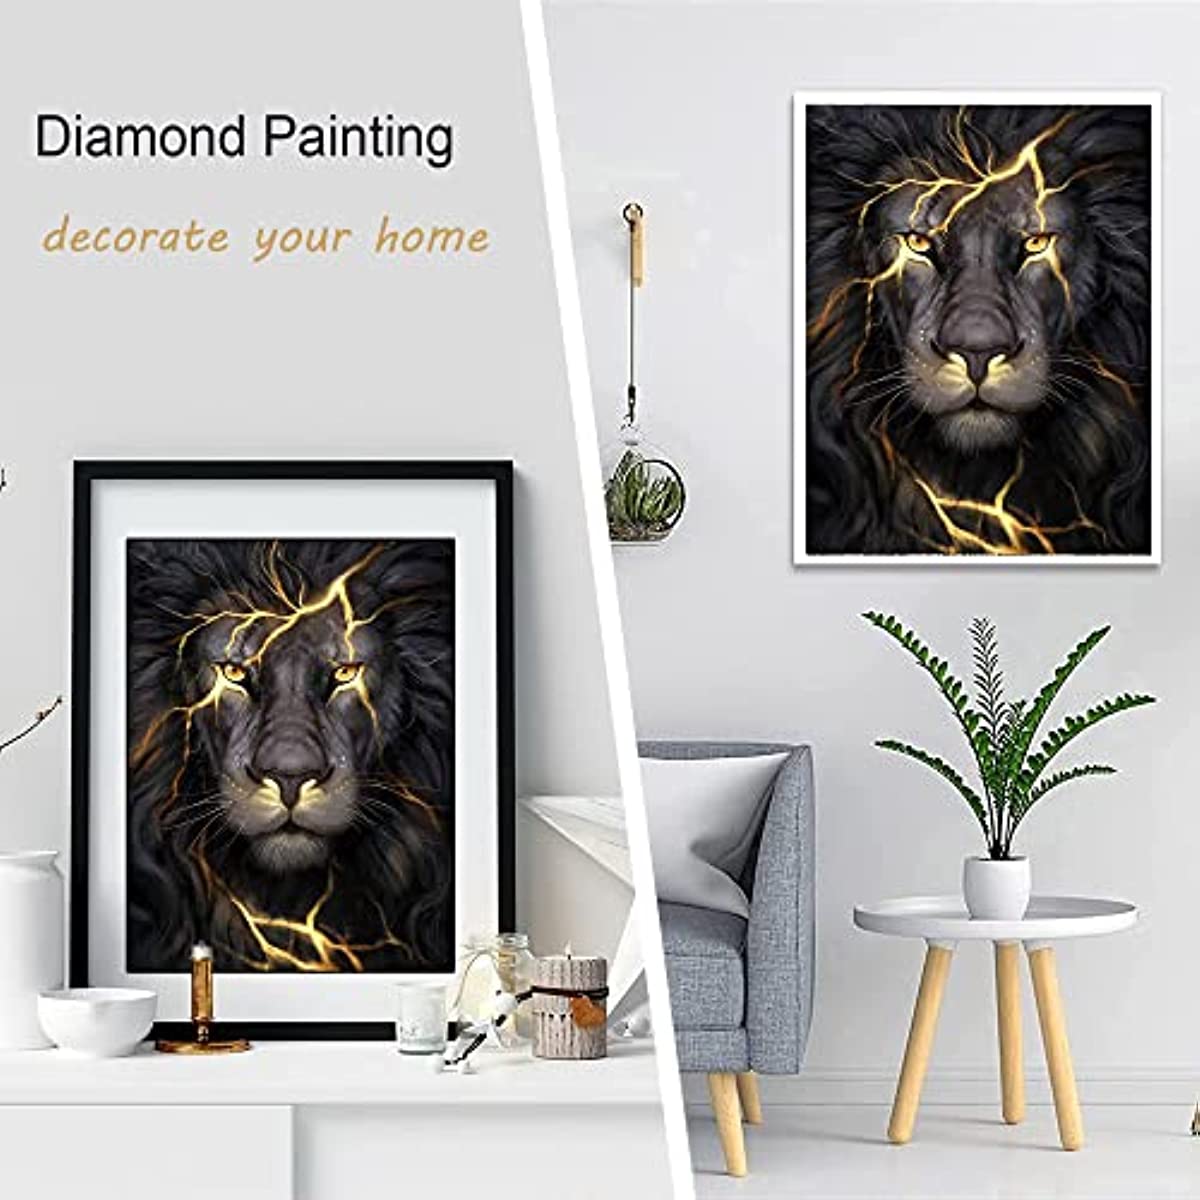 Huacan Diamond Painting Kits Black Lion 5D 30x40cm/11.8x15.7in, DP-1